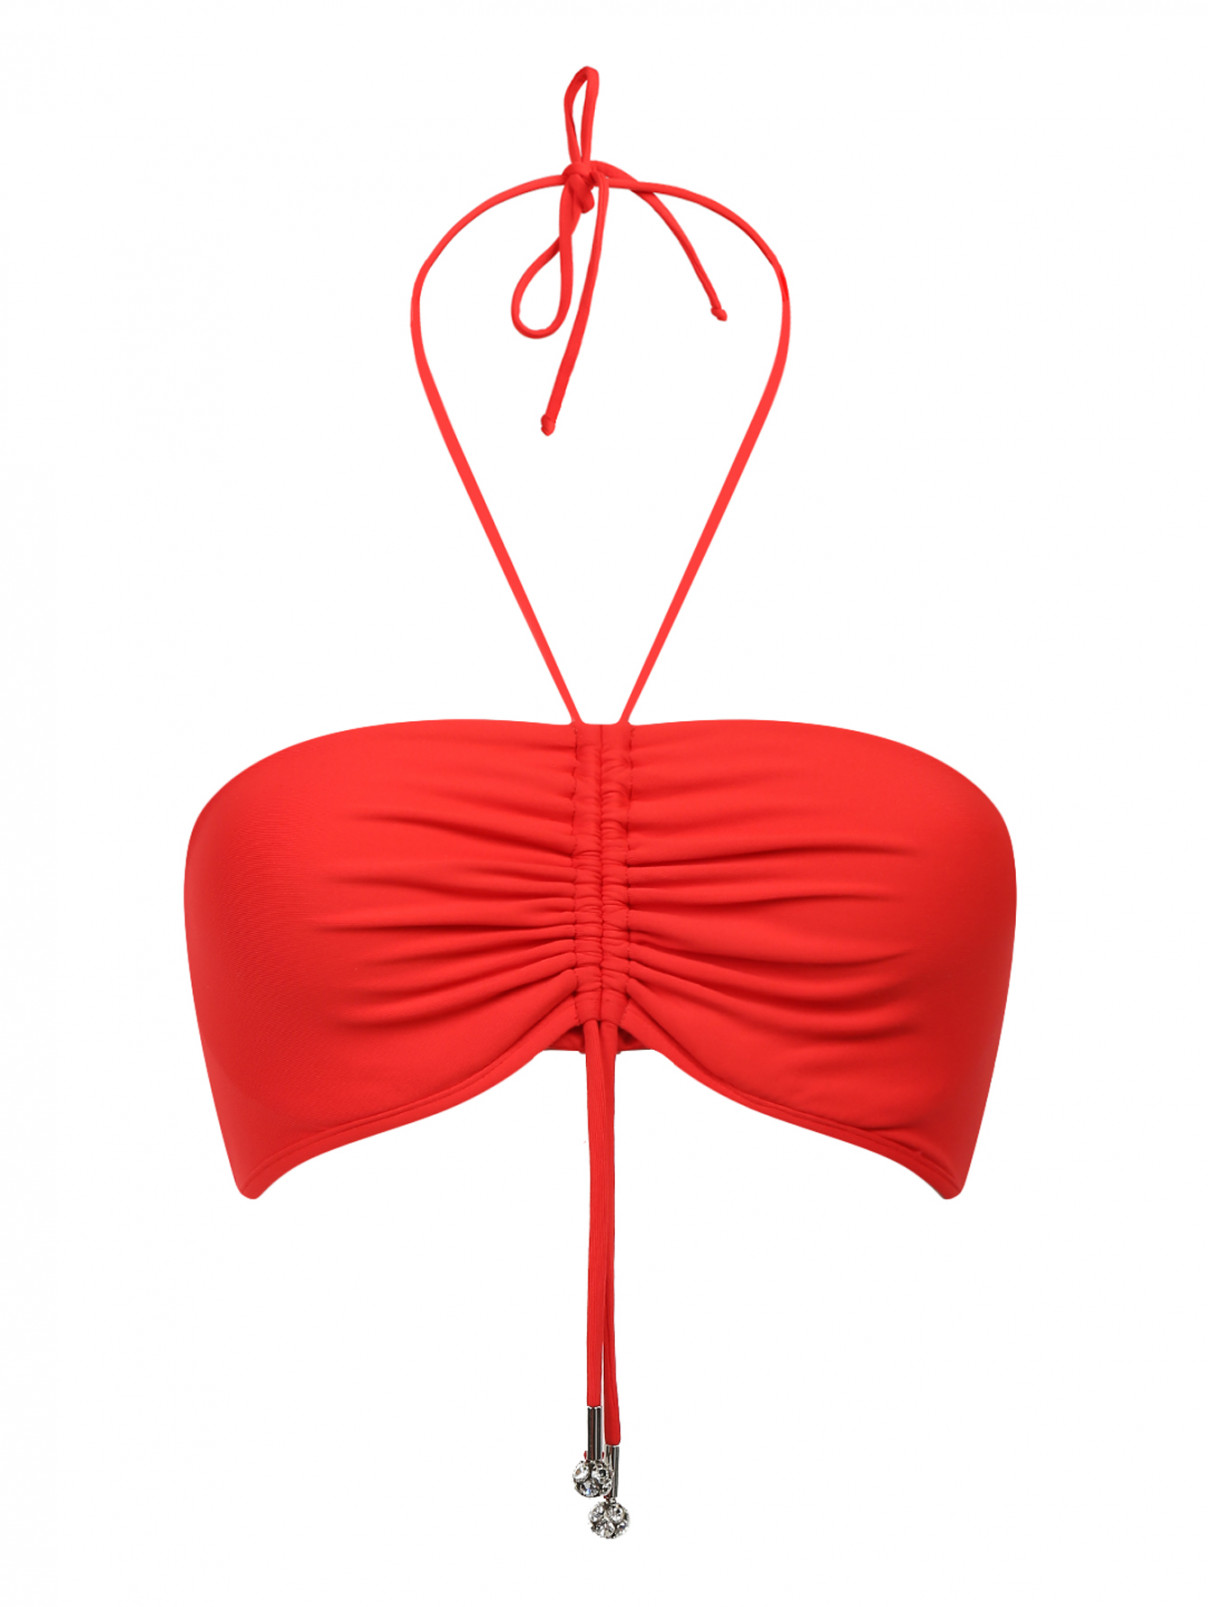 Купальный бюстгальтер с драпировкой La Perla  –  Общий вид  – Цвет:  Красный